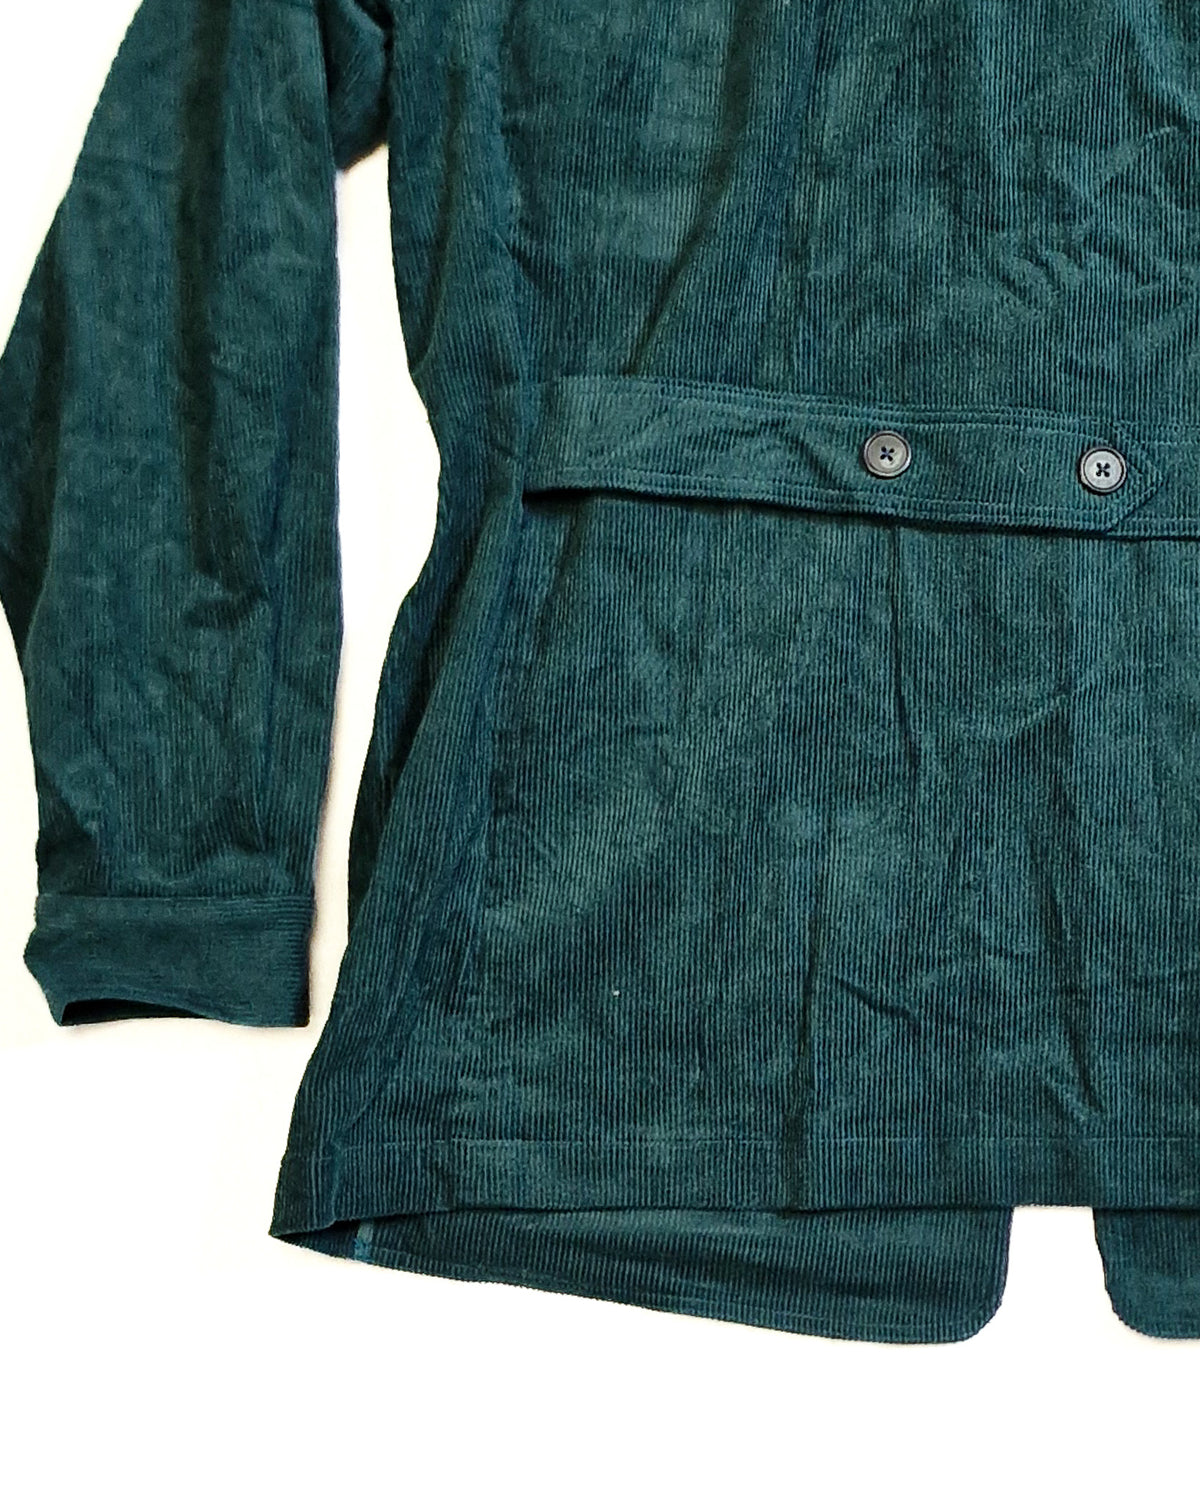 Sample Corduroy Artisan Jacket Size 40